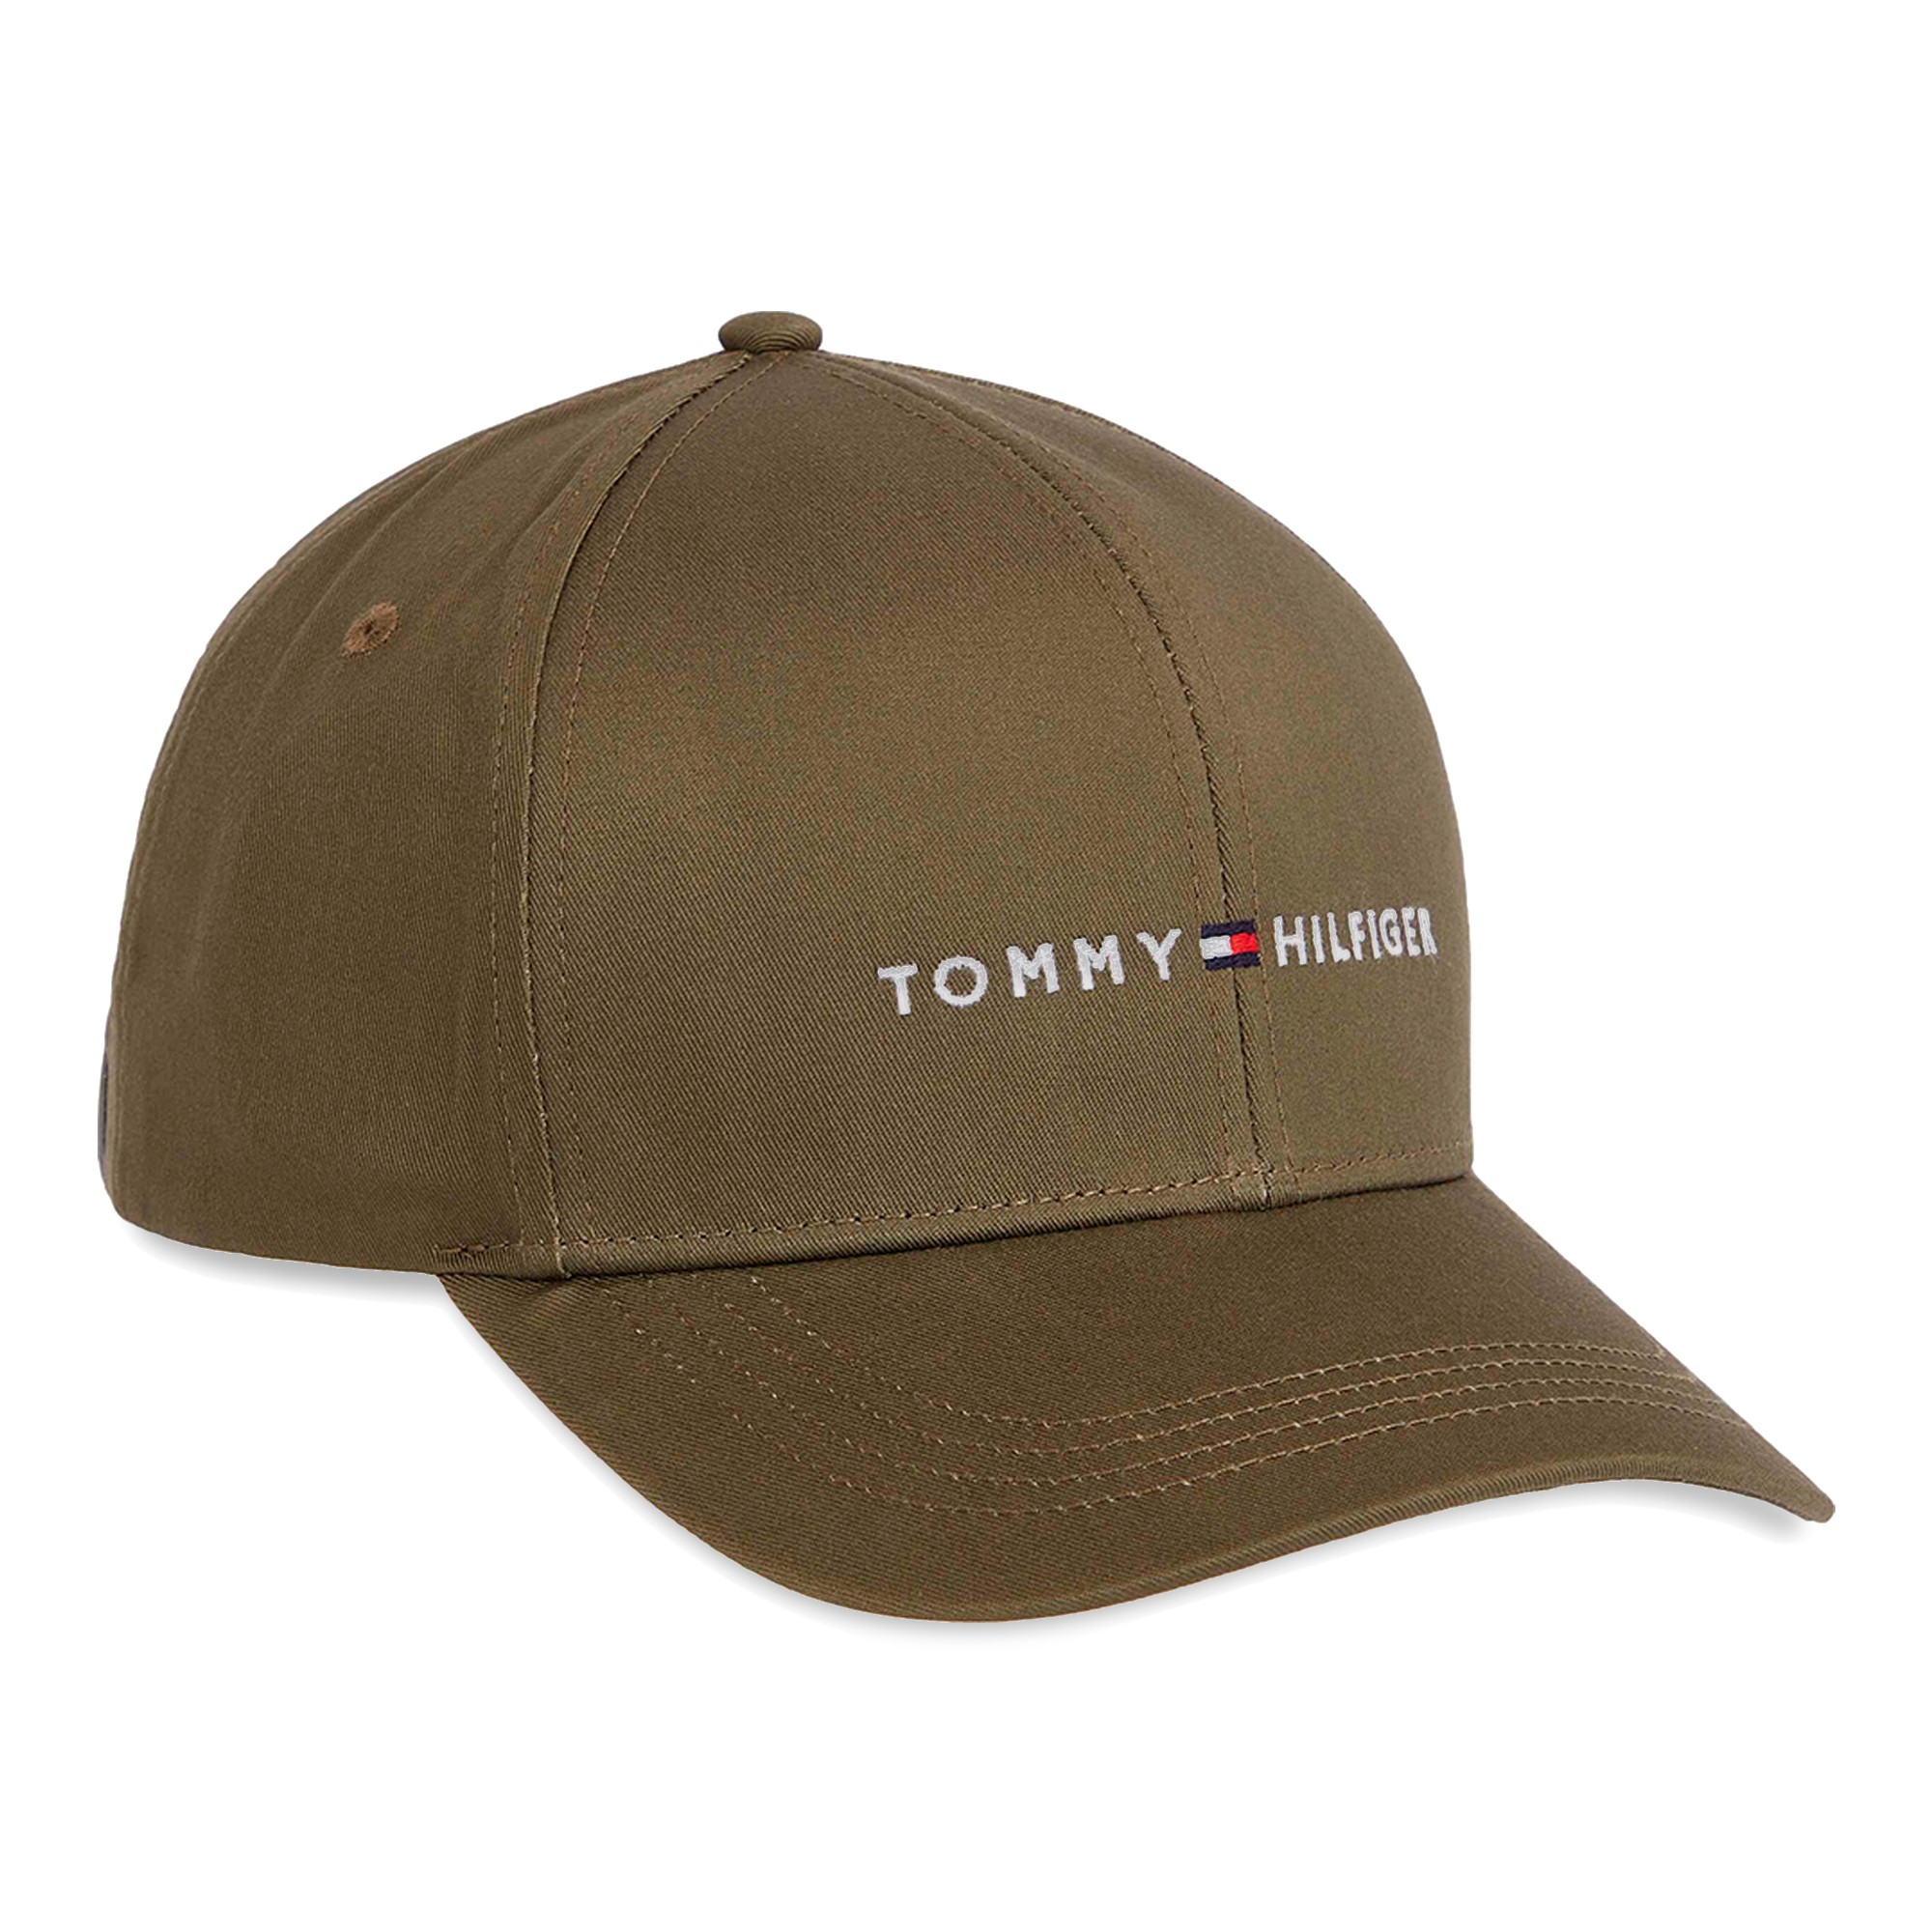 TOMMY HILFIGER: Chapeau homme - Vert Militaire  Chapeau Tommy Hilfiger  AM0AM11244 en ligne sur